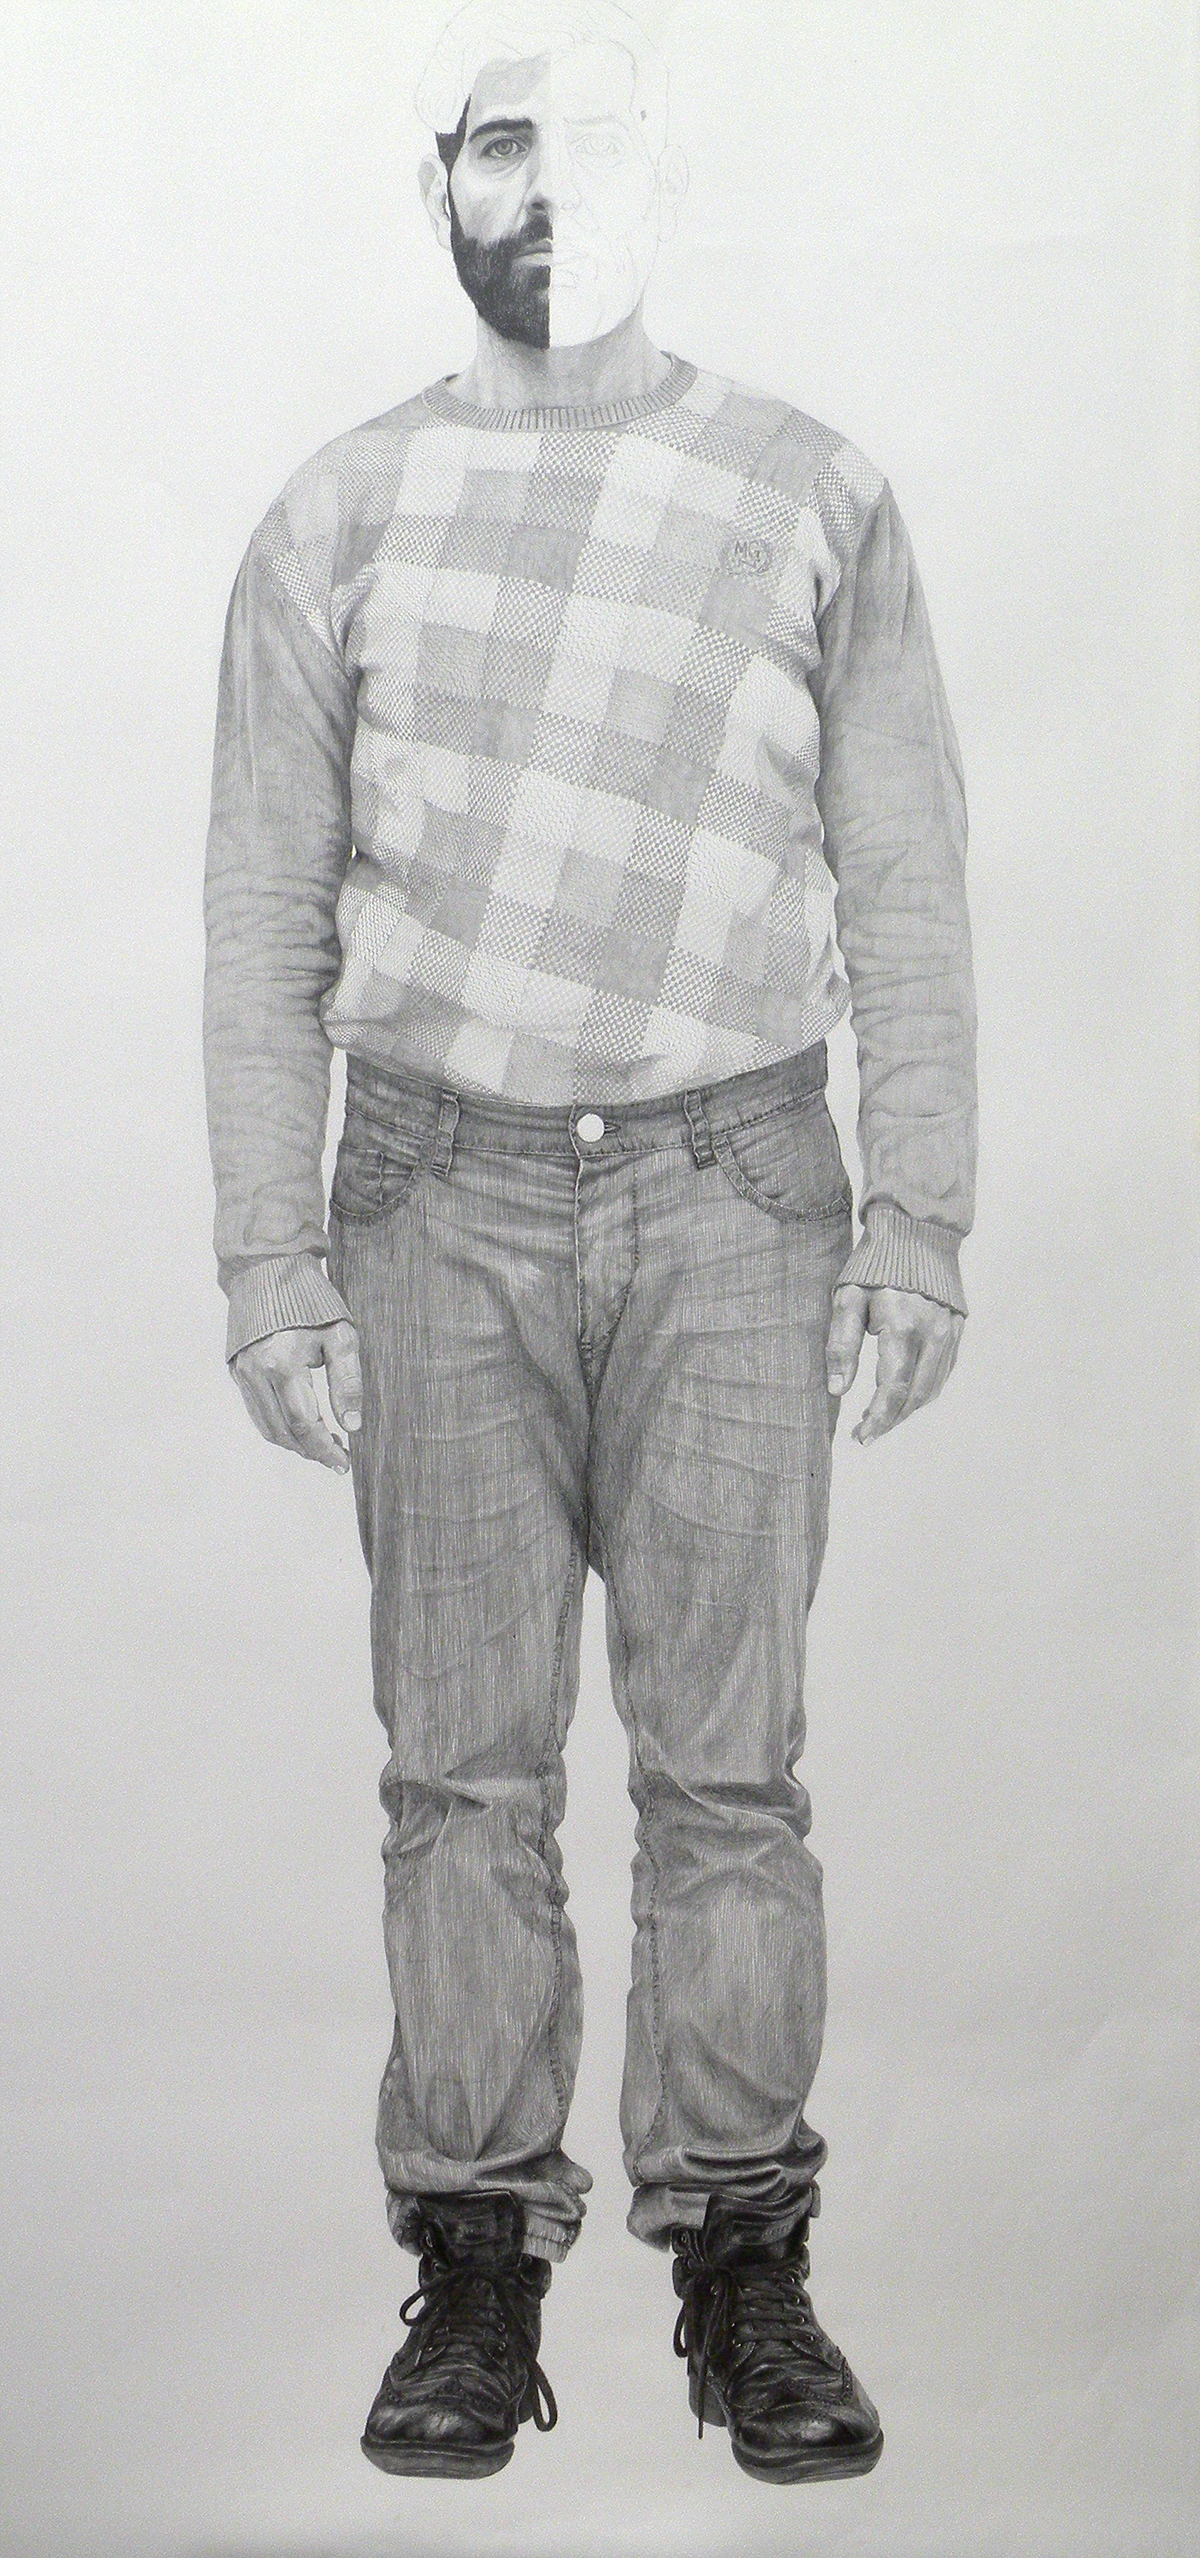 'Syrer' (Zustand) / Bleistift auf Papier / 100 x 200 cm / 2014